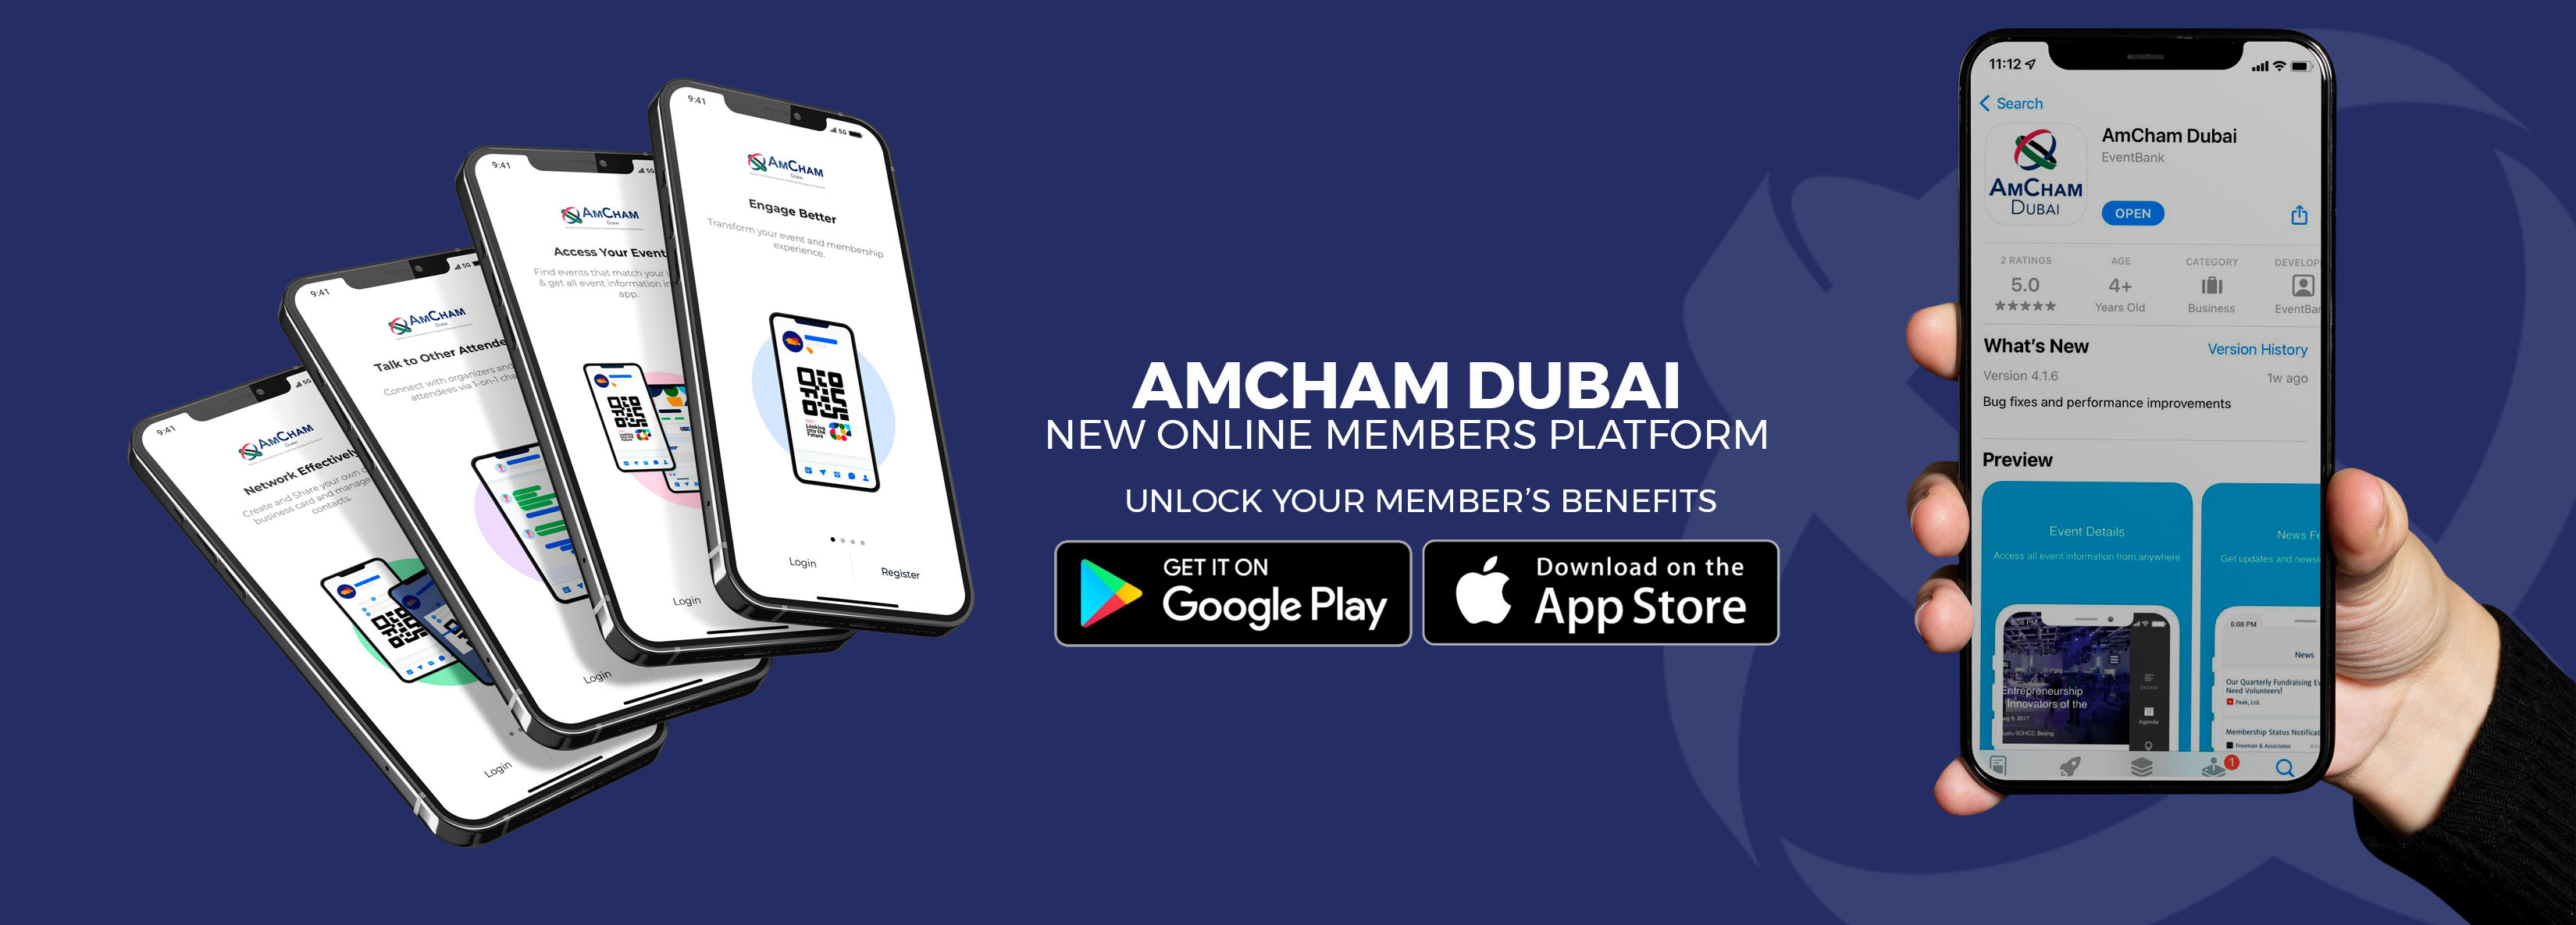 AmCham Dubai New Online Member Platform